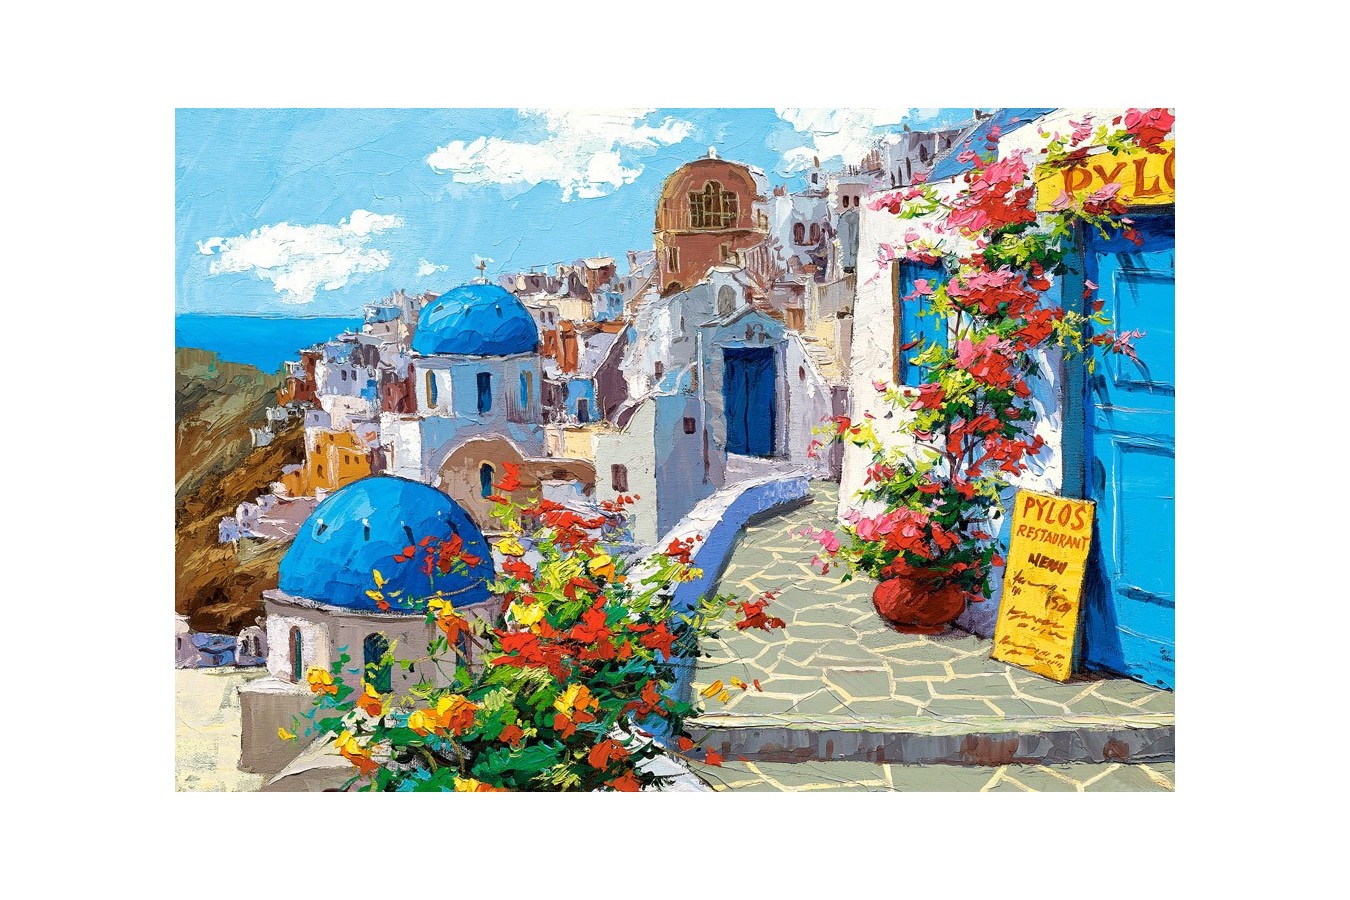 Puzzle Castorland - Spring in Santorini, 2000 piese